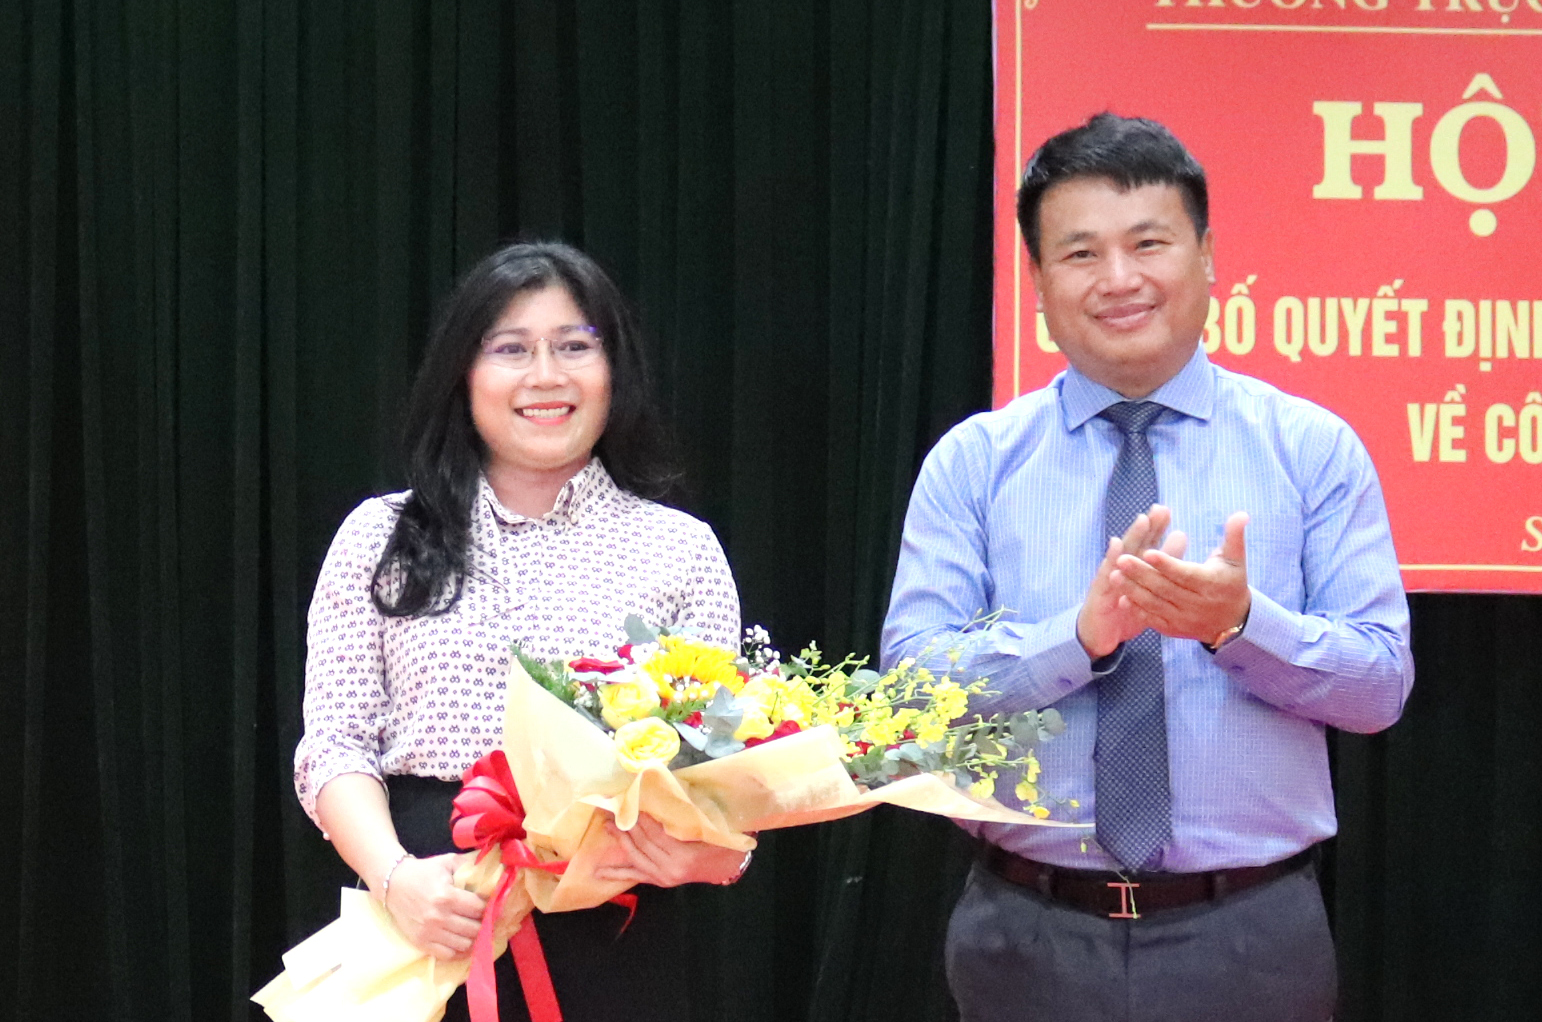 Bà Trương Thị Mỹ Trang - Phó Trưởng Ban Tuyên giáo Tỉnh ủy Quảng Ngãi được bầu giữ chức Phó Chủ tịch Liên hiệp các Hội KH&amp;KT.